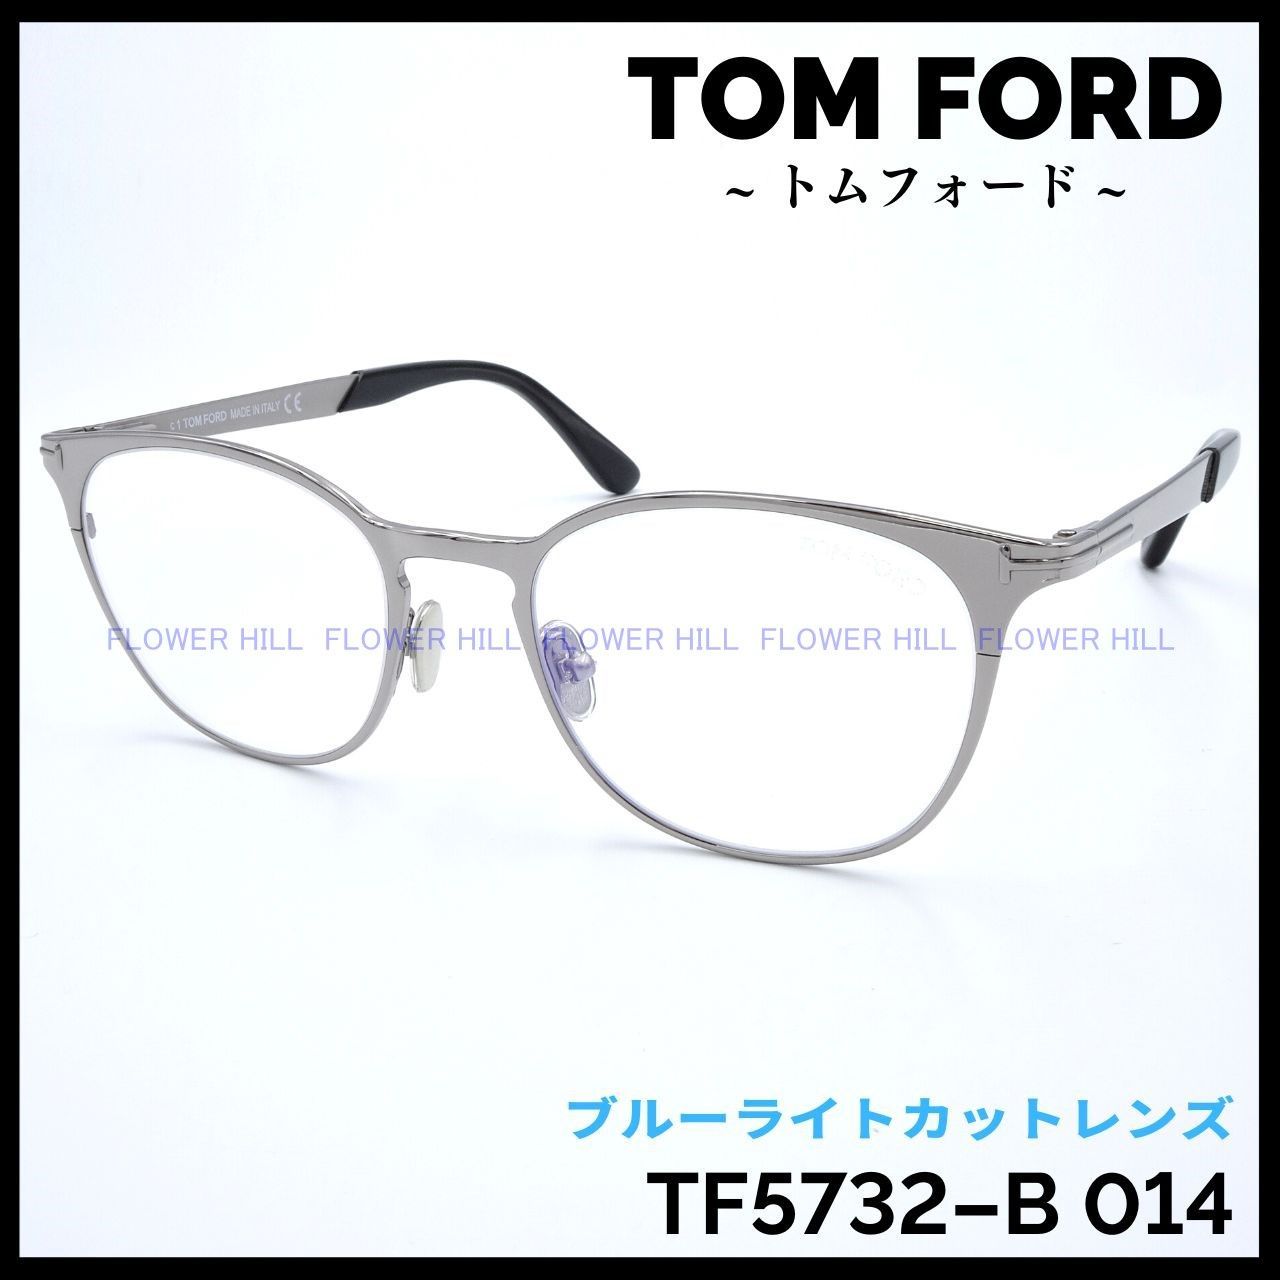 TOM FORD トムフォード TF5732-B 014 52サイズ メガネ メタルフレーム